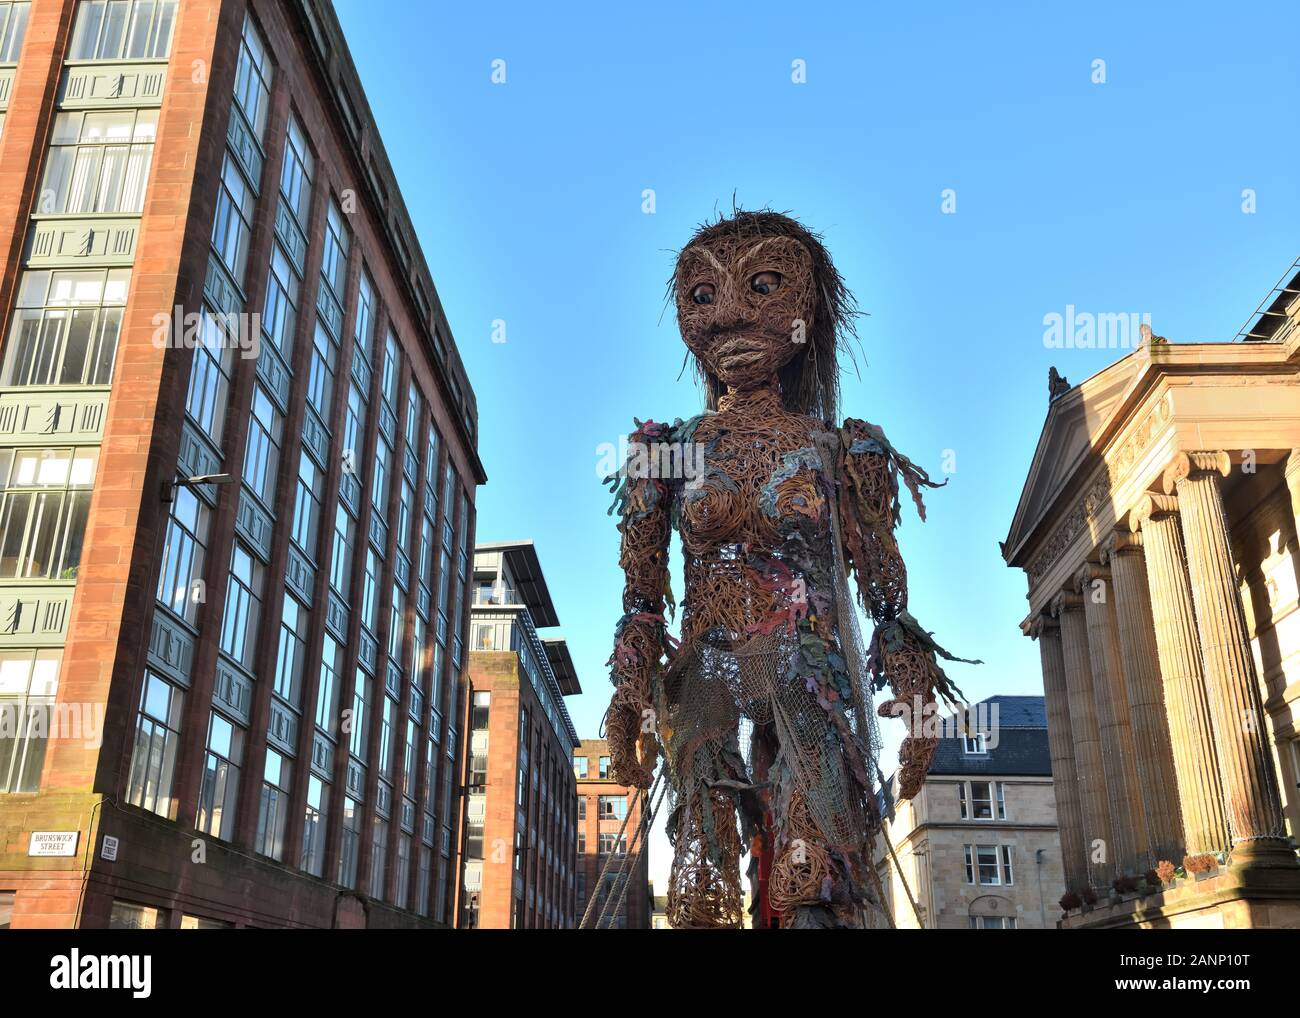 18 janvier 2020. Glasgow, Écosse, Royaume-Uni. Une marionnette animée de 10 m de haut appelée Storm marche dans le centre-ville pour marquer le début de Coastal Connections partie d'un événement climatique qui a lieu dans la ville. Banque D'Images